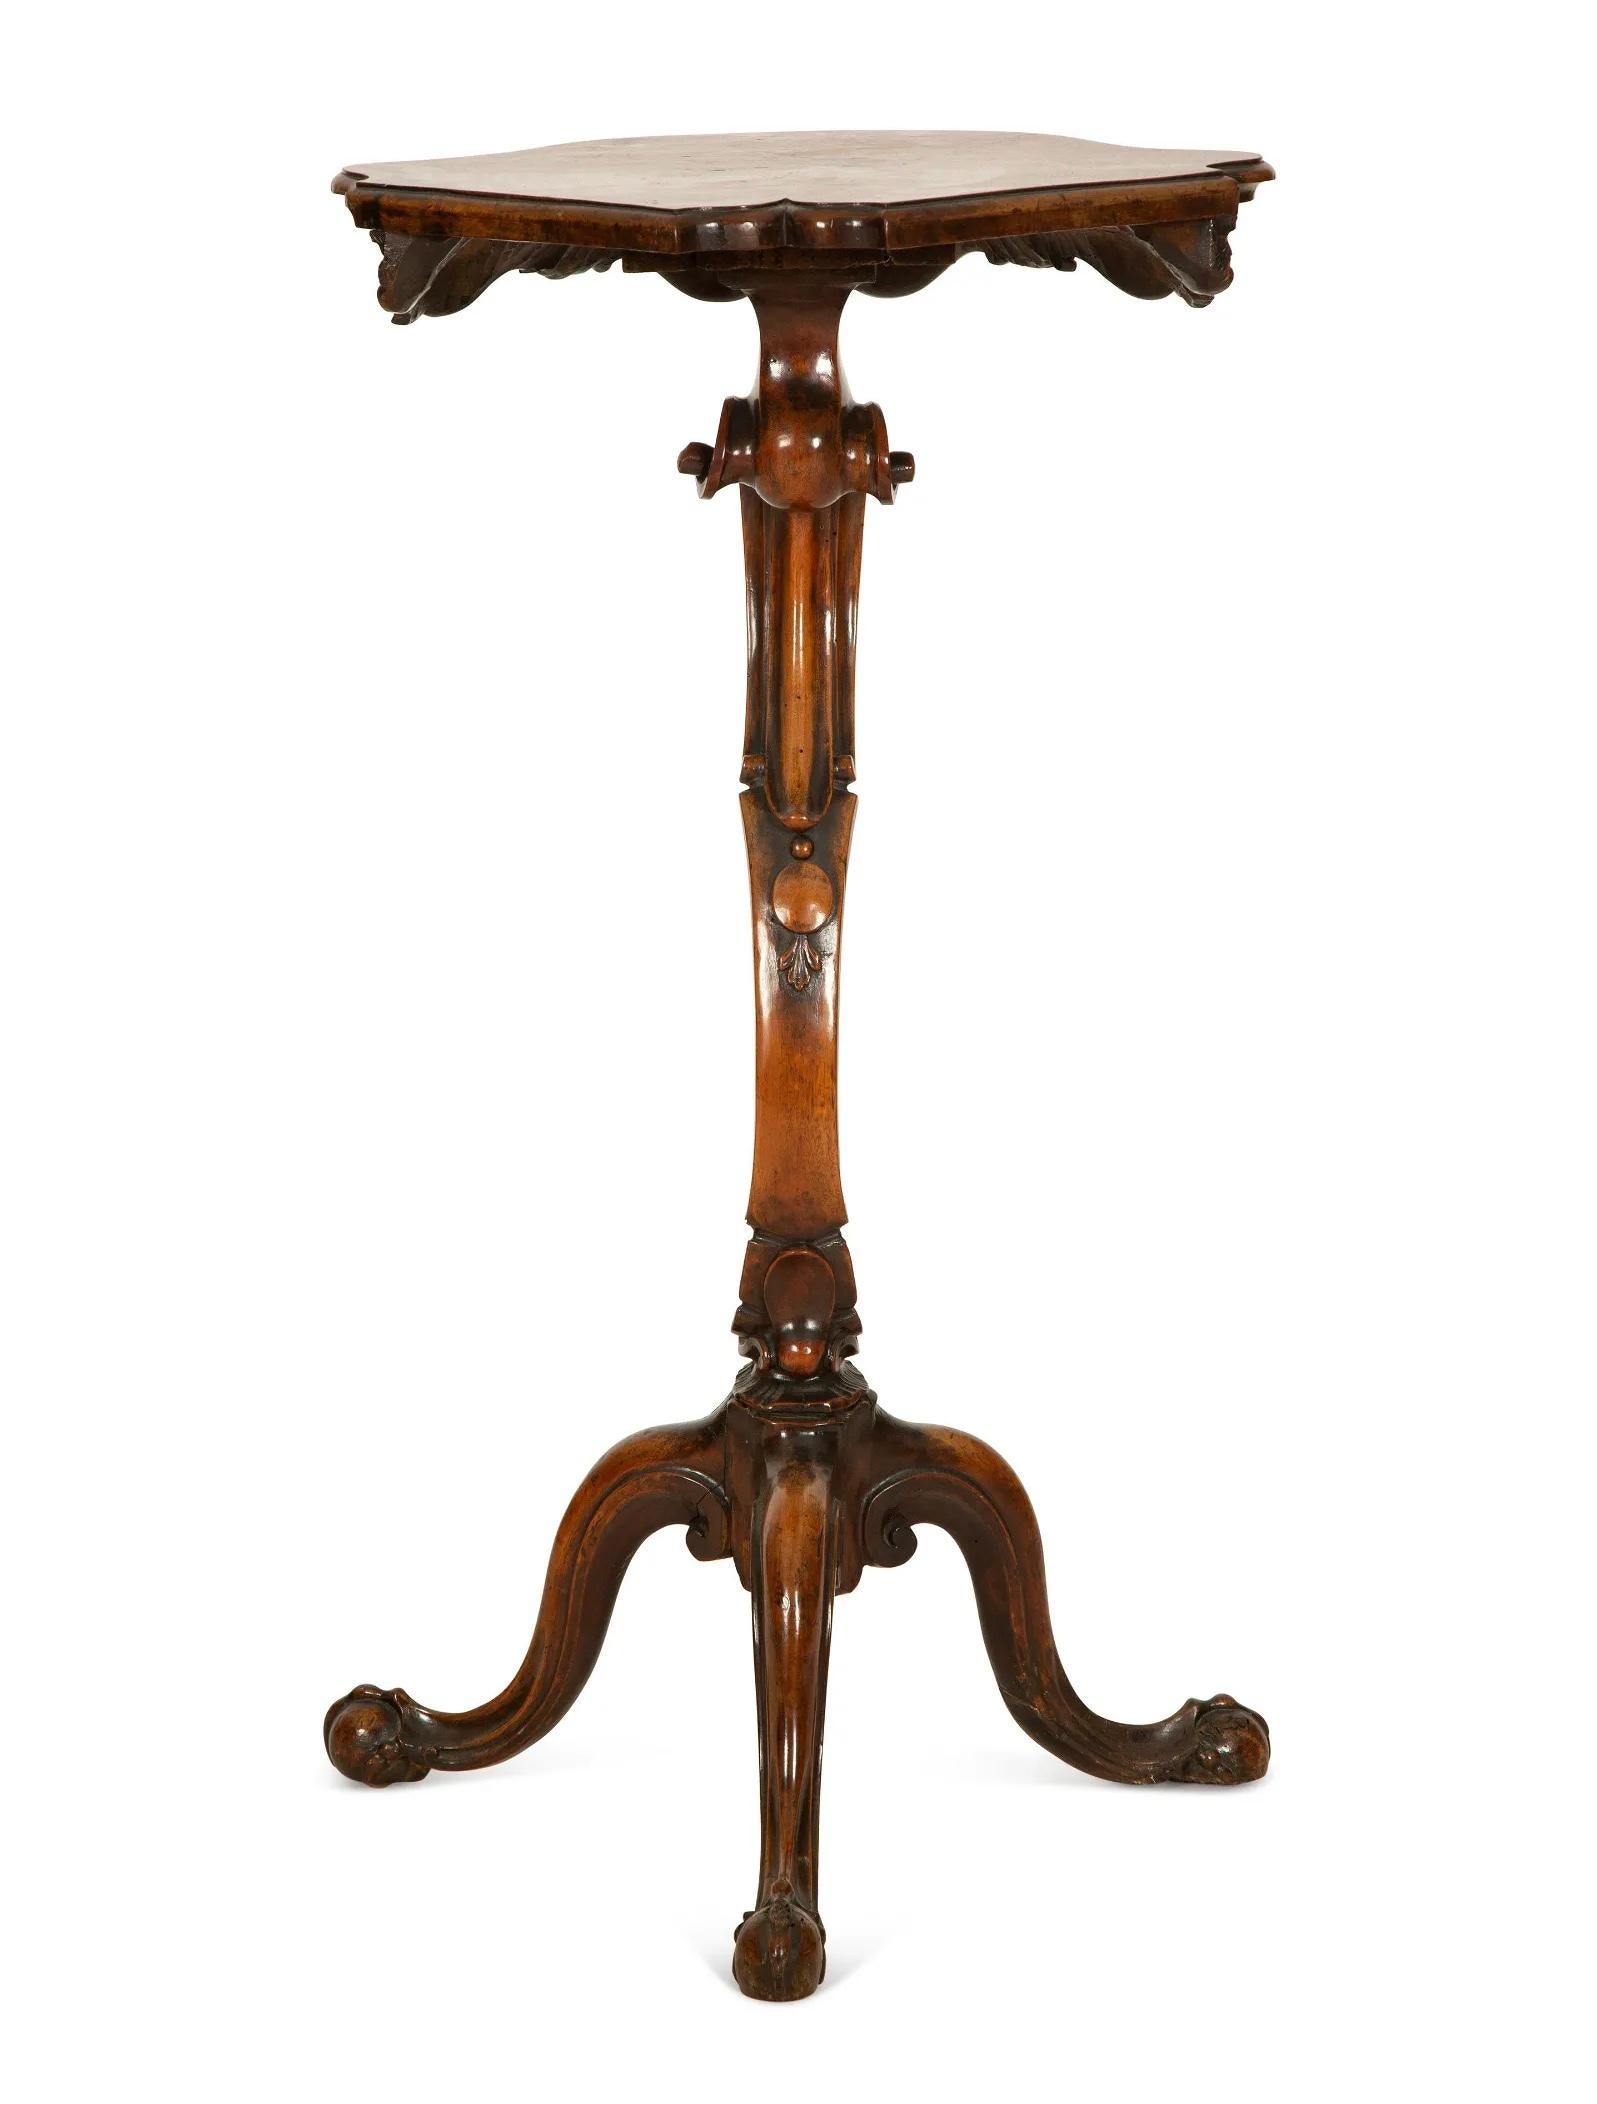 Ein italienischer Rokoko-Gueridon aus Nussbaumholz À Trespolo, Sockel.
Spätes 18. Jahrhundert
Mit serpentinenförmiger Nussbaumplatte über einem geschnitzten Fries, der auf einer geschnitzten, verschnörkelten Stütze und drei geschnitzten, abgestuften